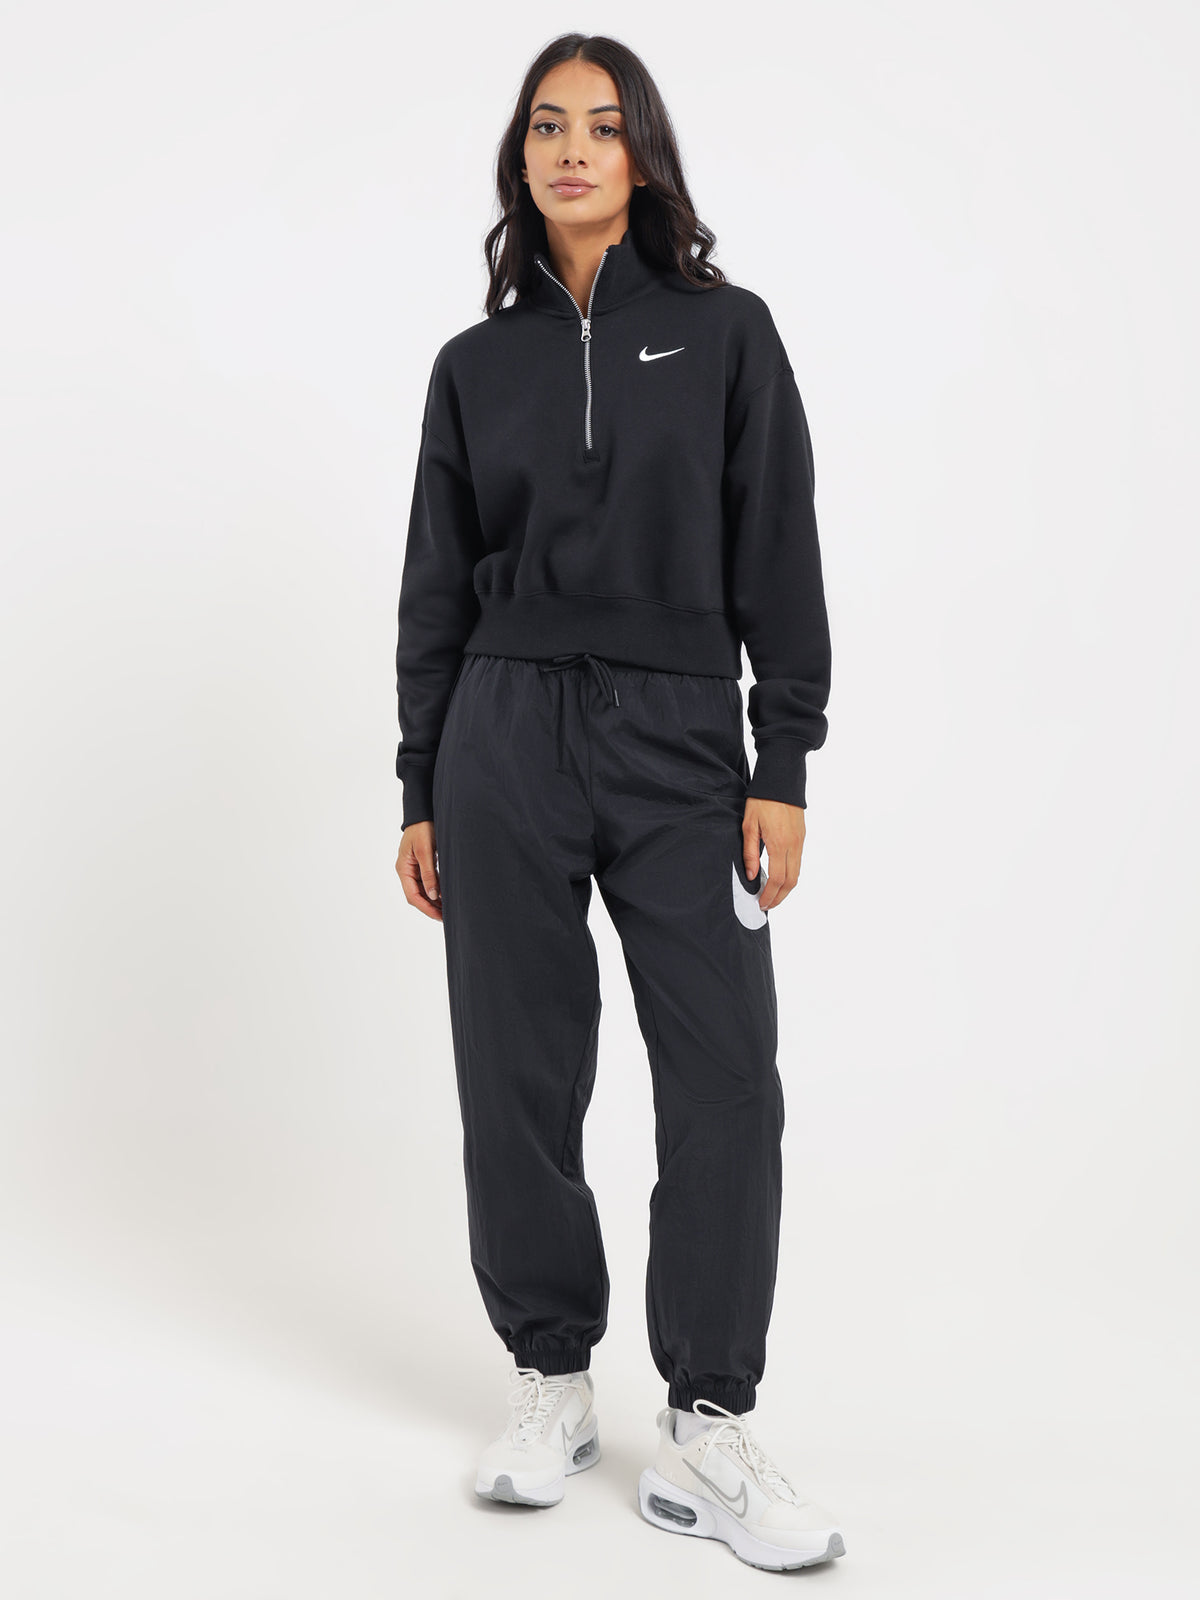 Sportswear Phoenix Fleece Quarter Zip in Black